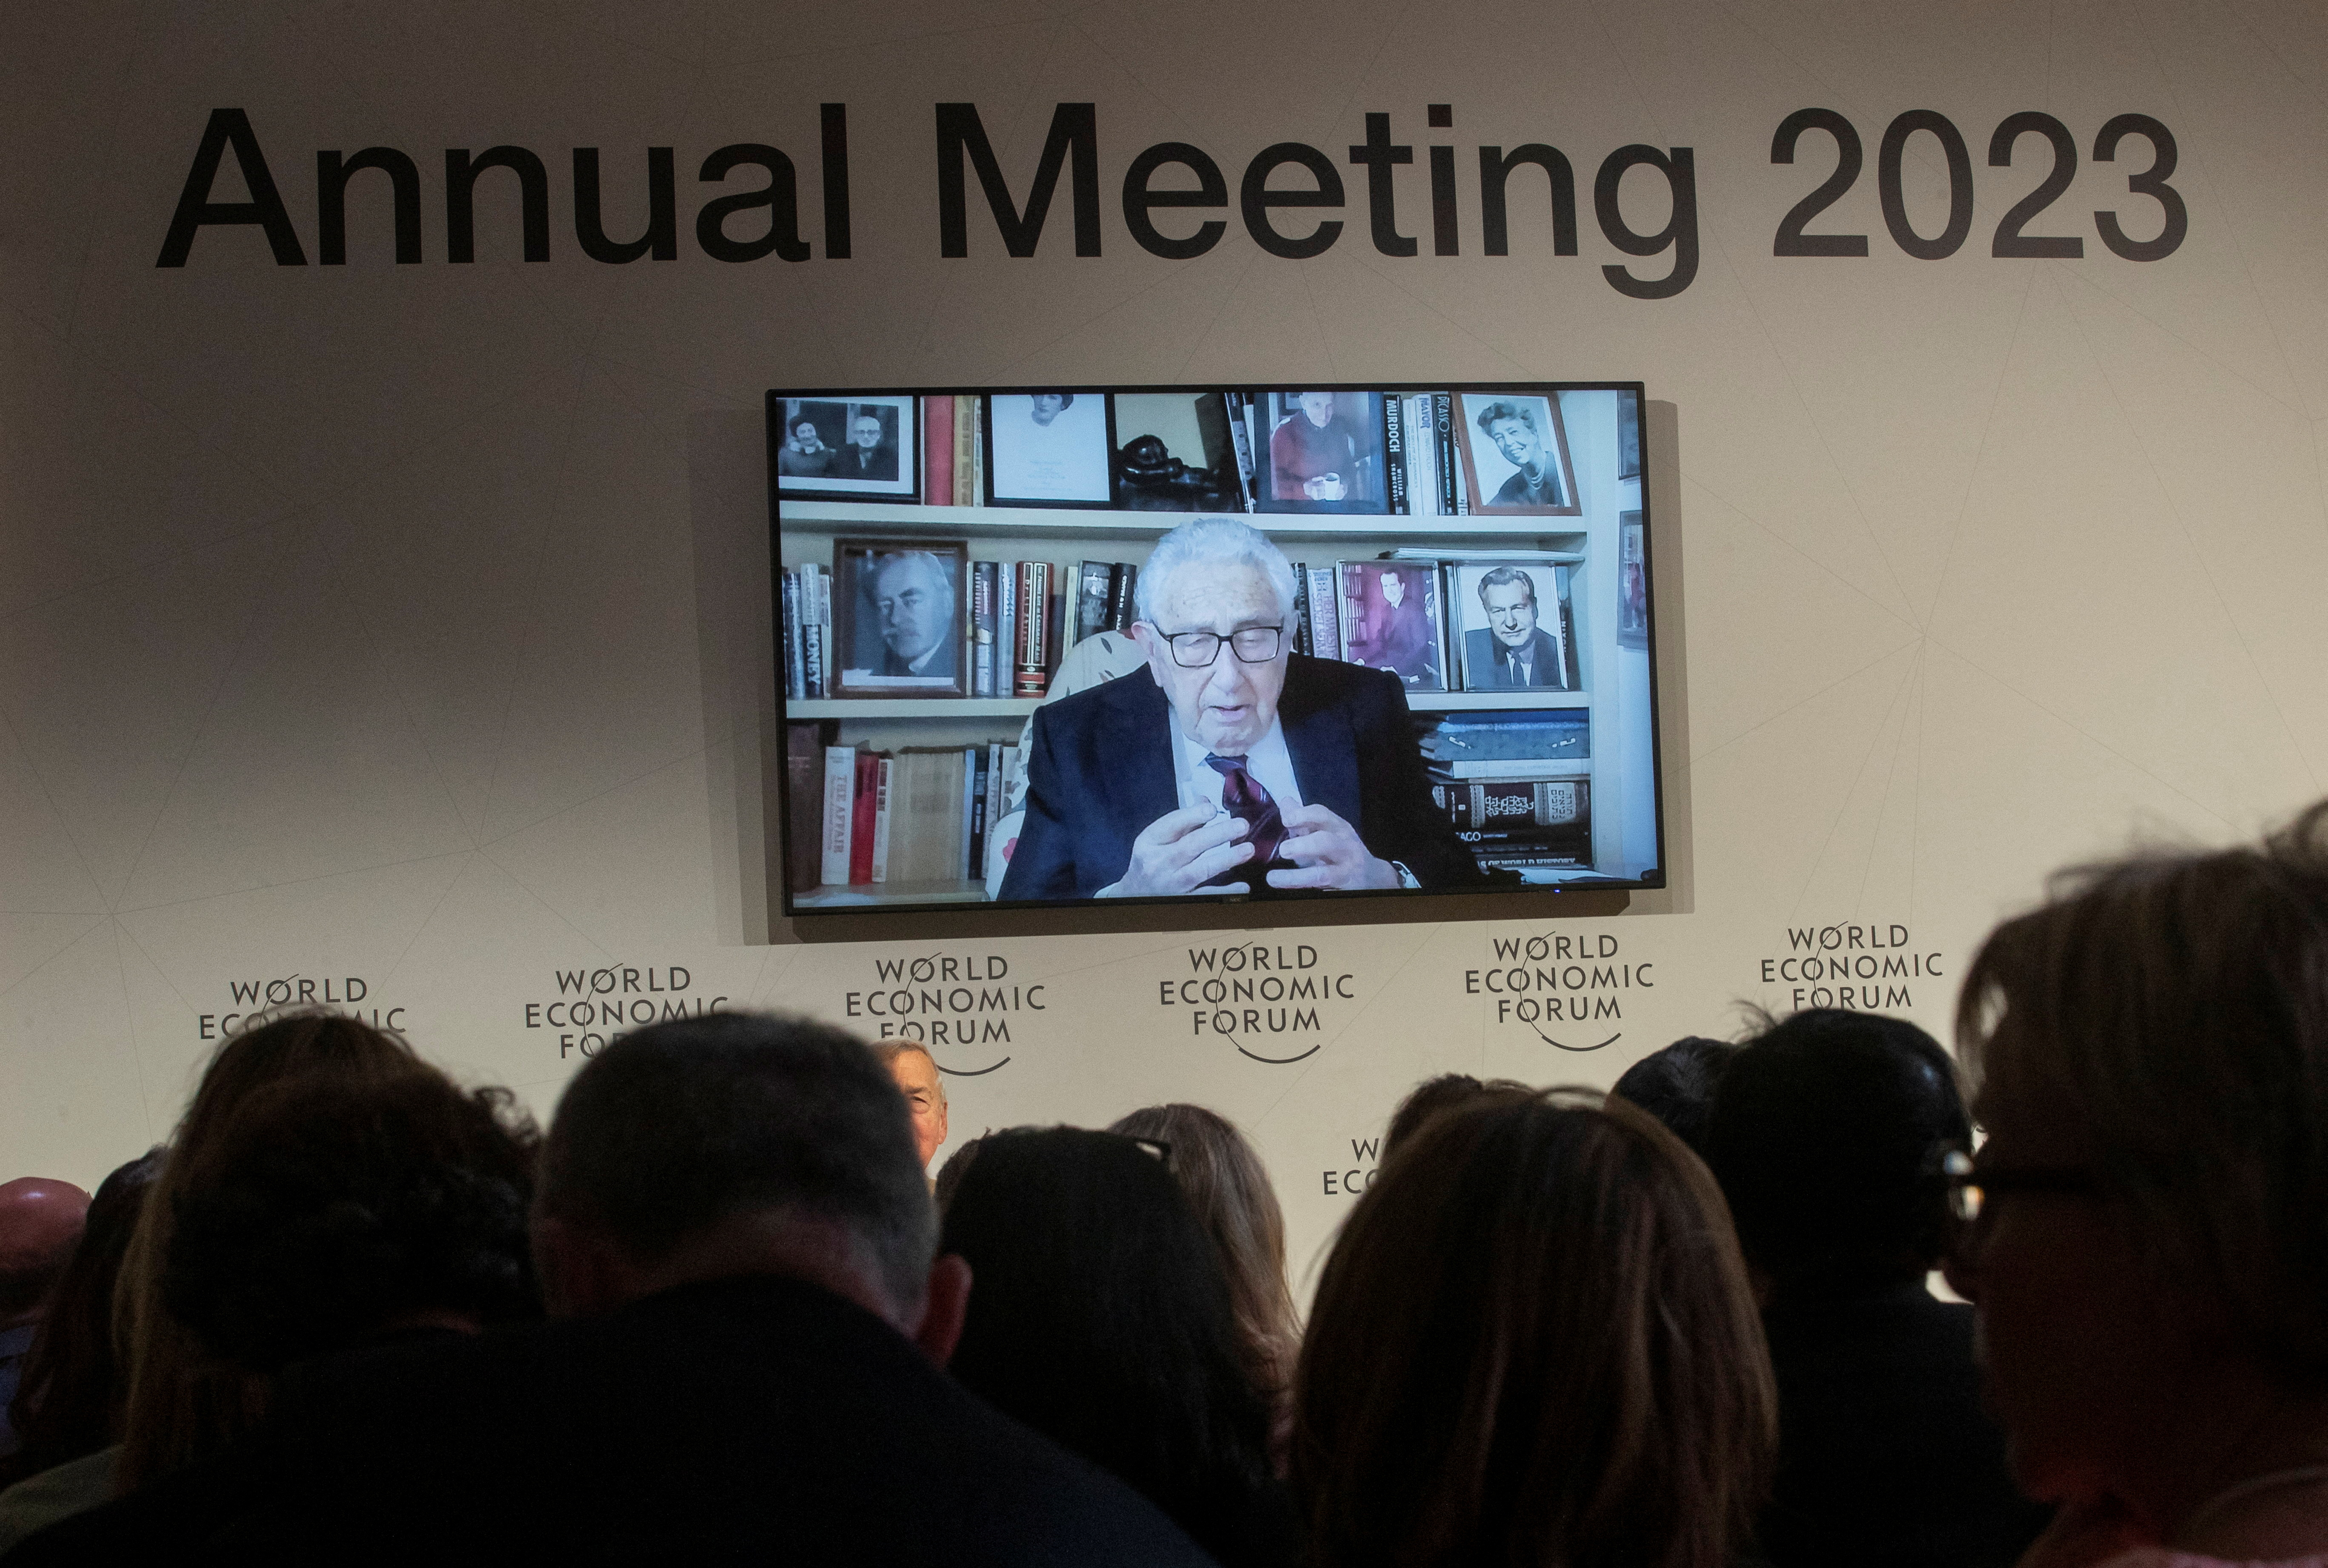 Henry Kissinger aparece en una pantalla mientras pronuncia un discurso en video a los participantes del Foro Económico Mundial (WEF) 2023, en el complejo alpino de Davos, Suiza, el 17 de enero de 2023 (REUTERS/Arnd WiegmannDavid Hume Kennerly- Gerald Biblioteca Presidencial R. Ford)
